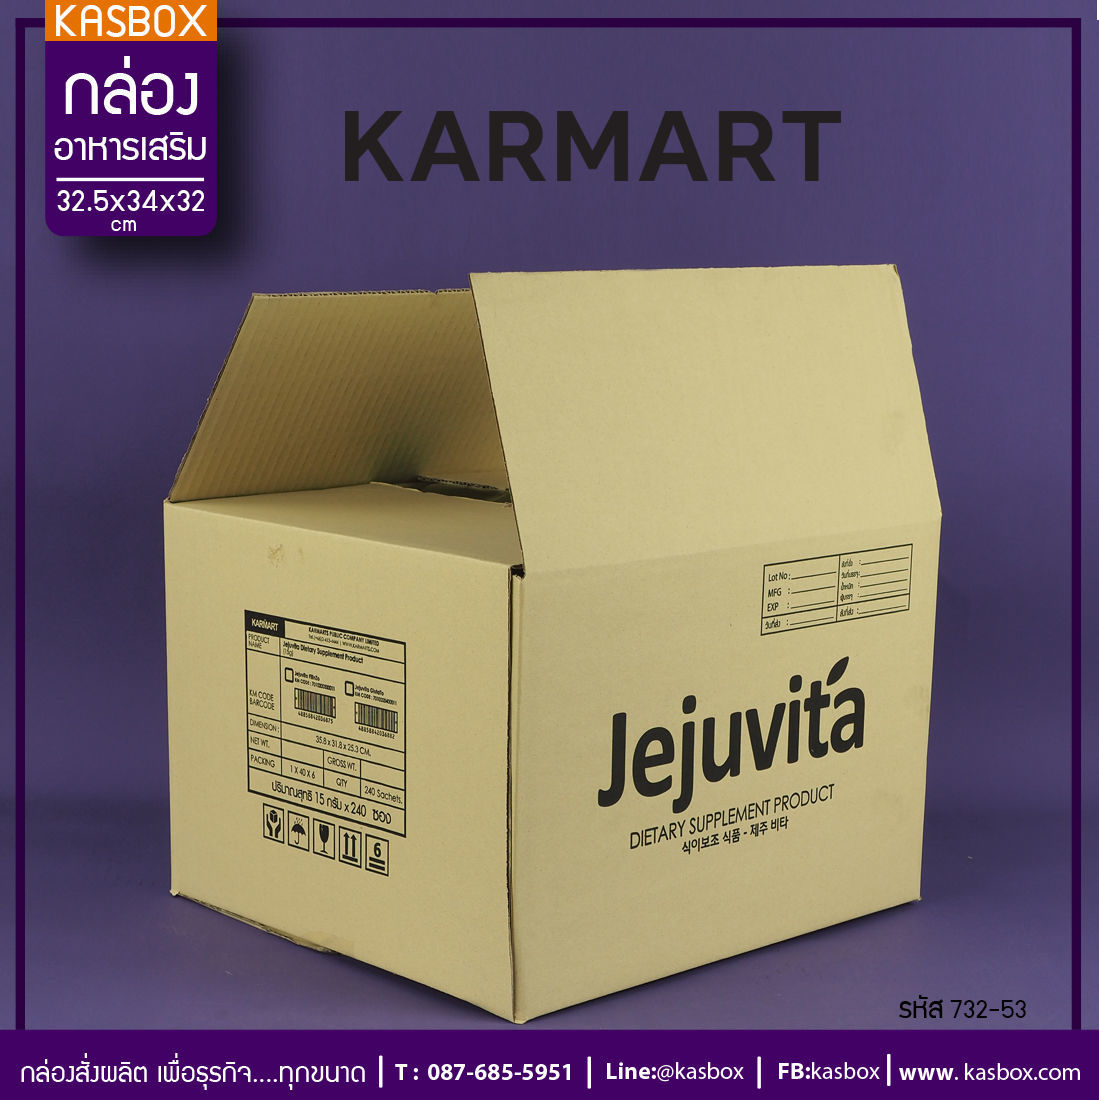 กล่องอาหารเสริม
Brand KARMART